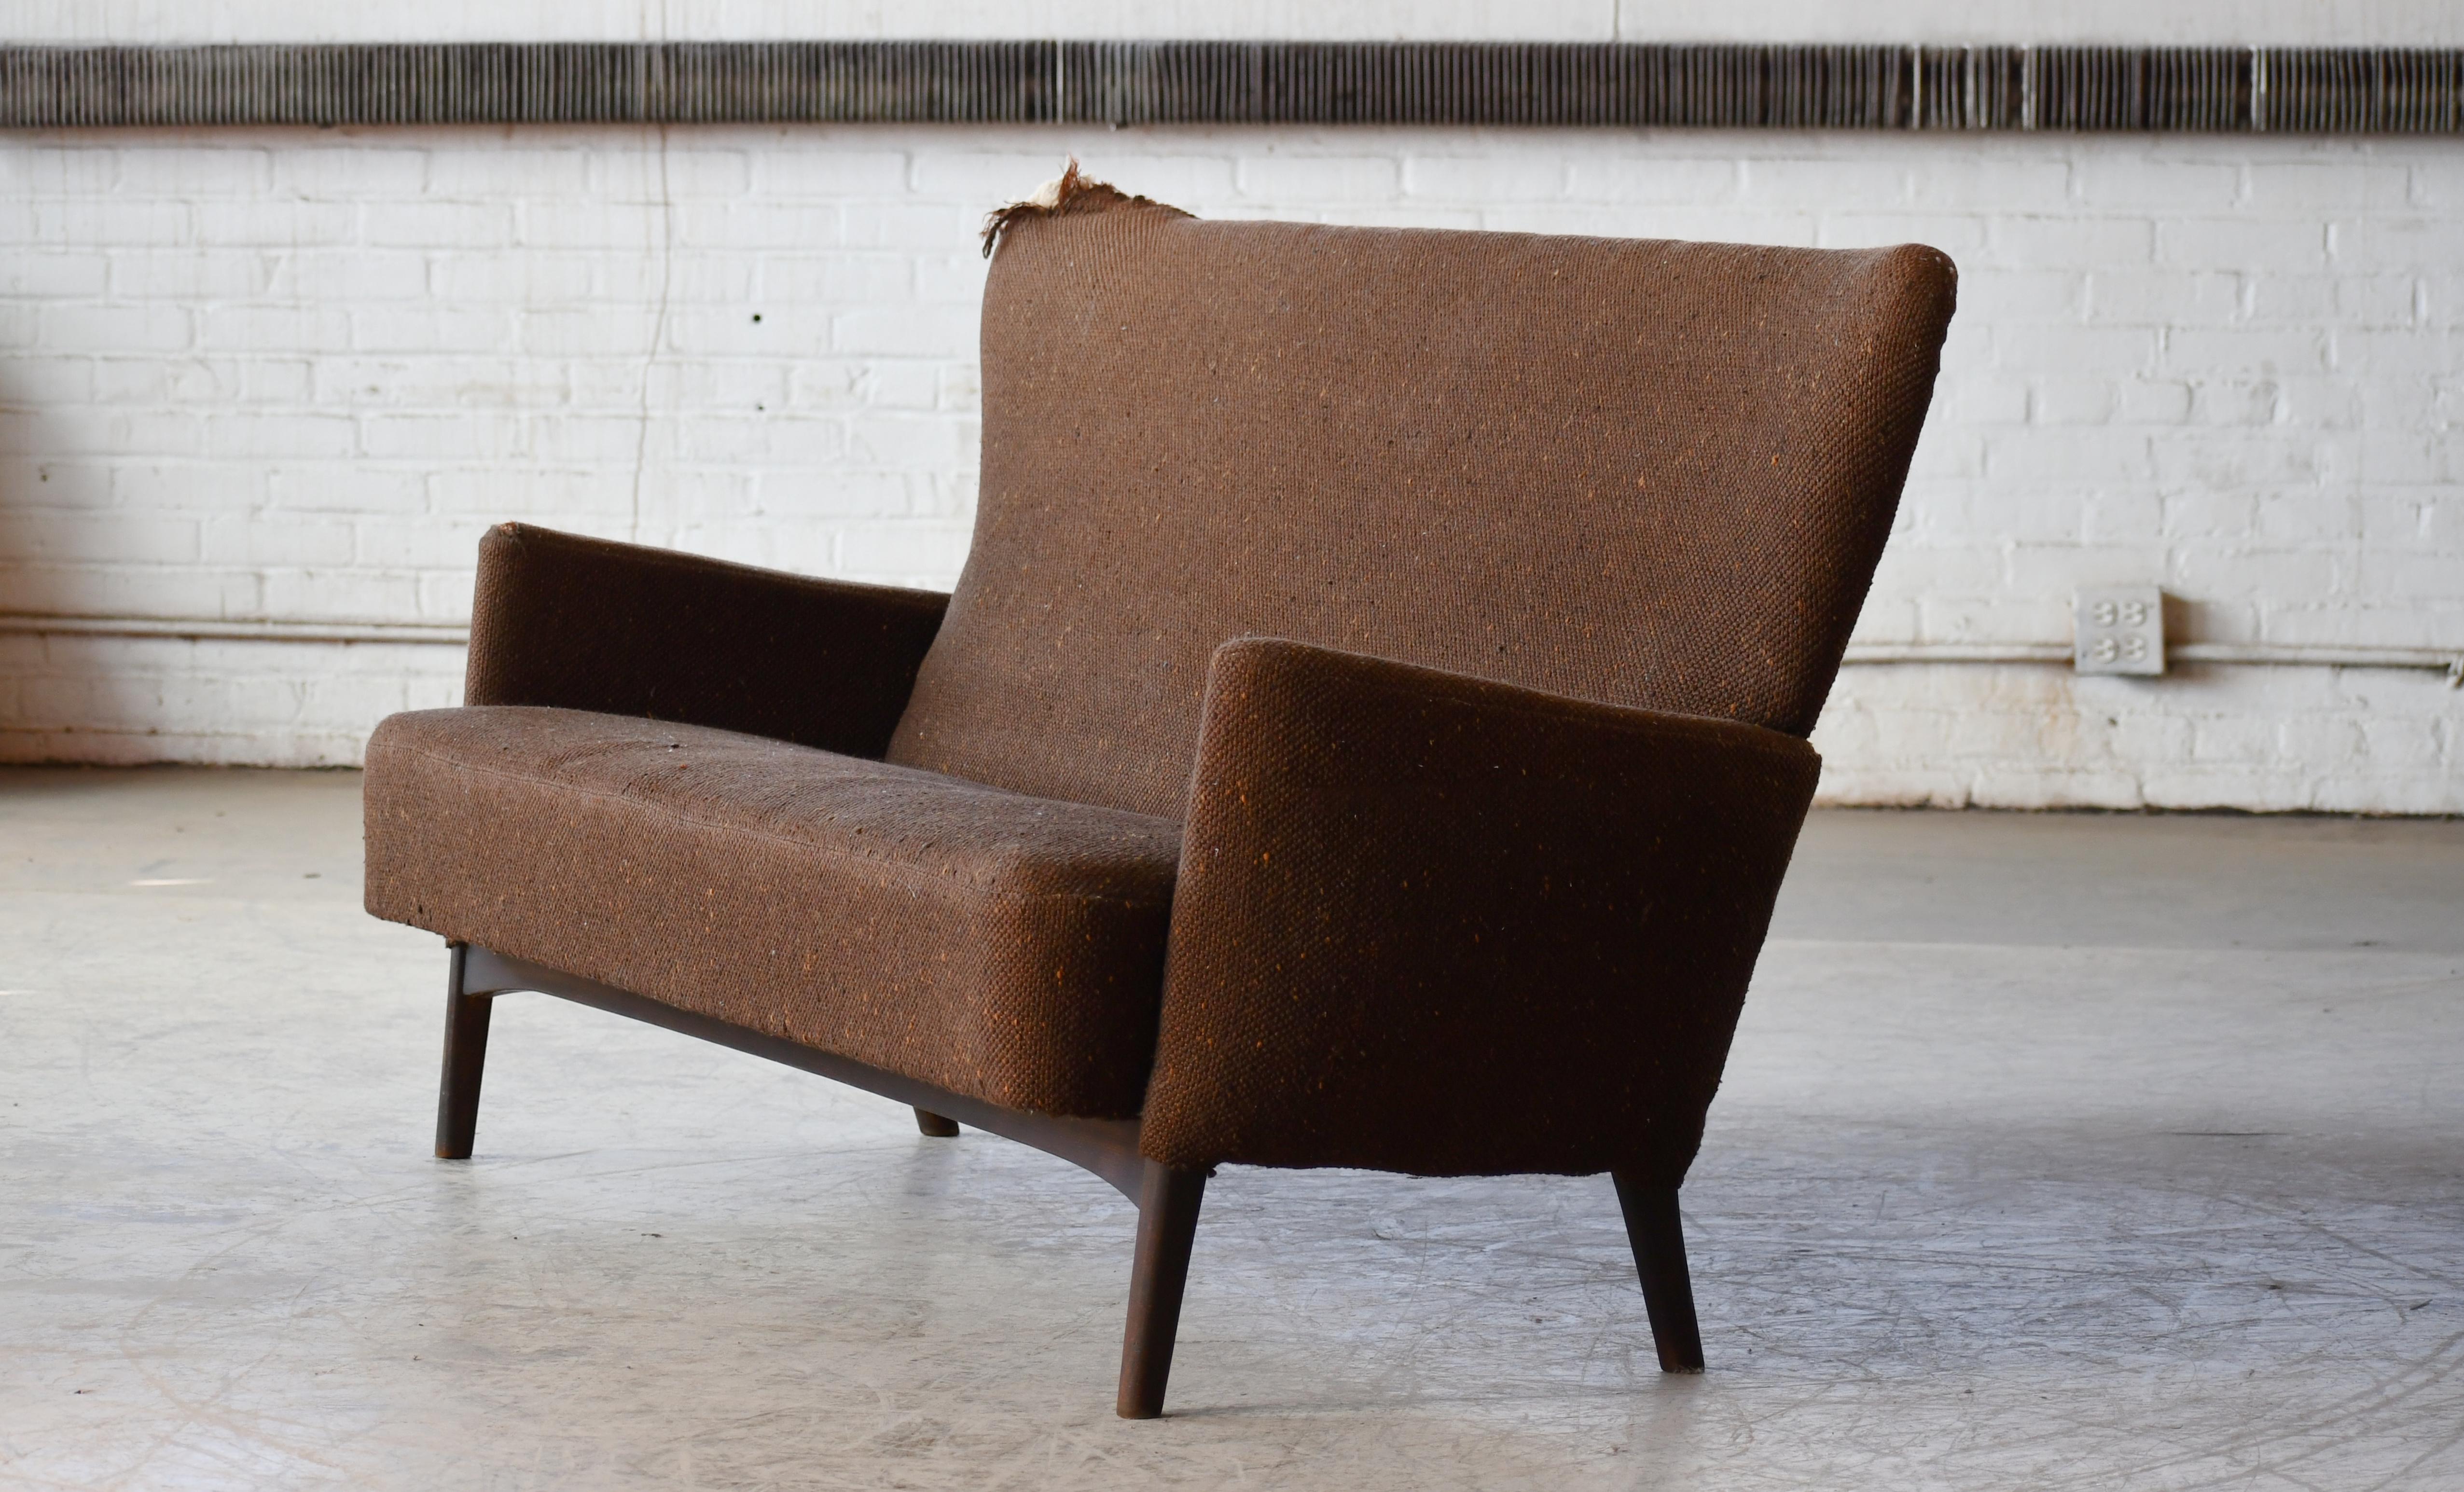 Sehr charmantes und sehr elegantes kleines Sofa, hergestellt in Dänemark um Mitte der 1950er Jahre von Fritz Hansen. Es ist ähnlich, aber ein bisschen geradliniger und moderner als sein bekanntes Modell 8112. Solide und robust mit Spiralfedern im